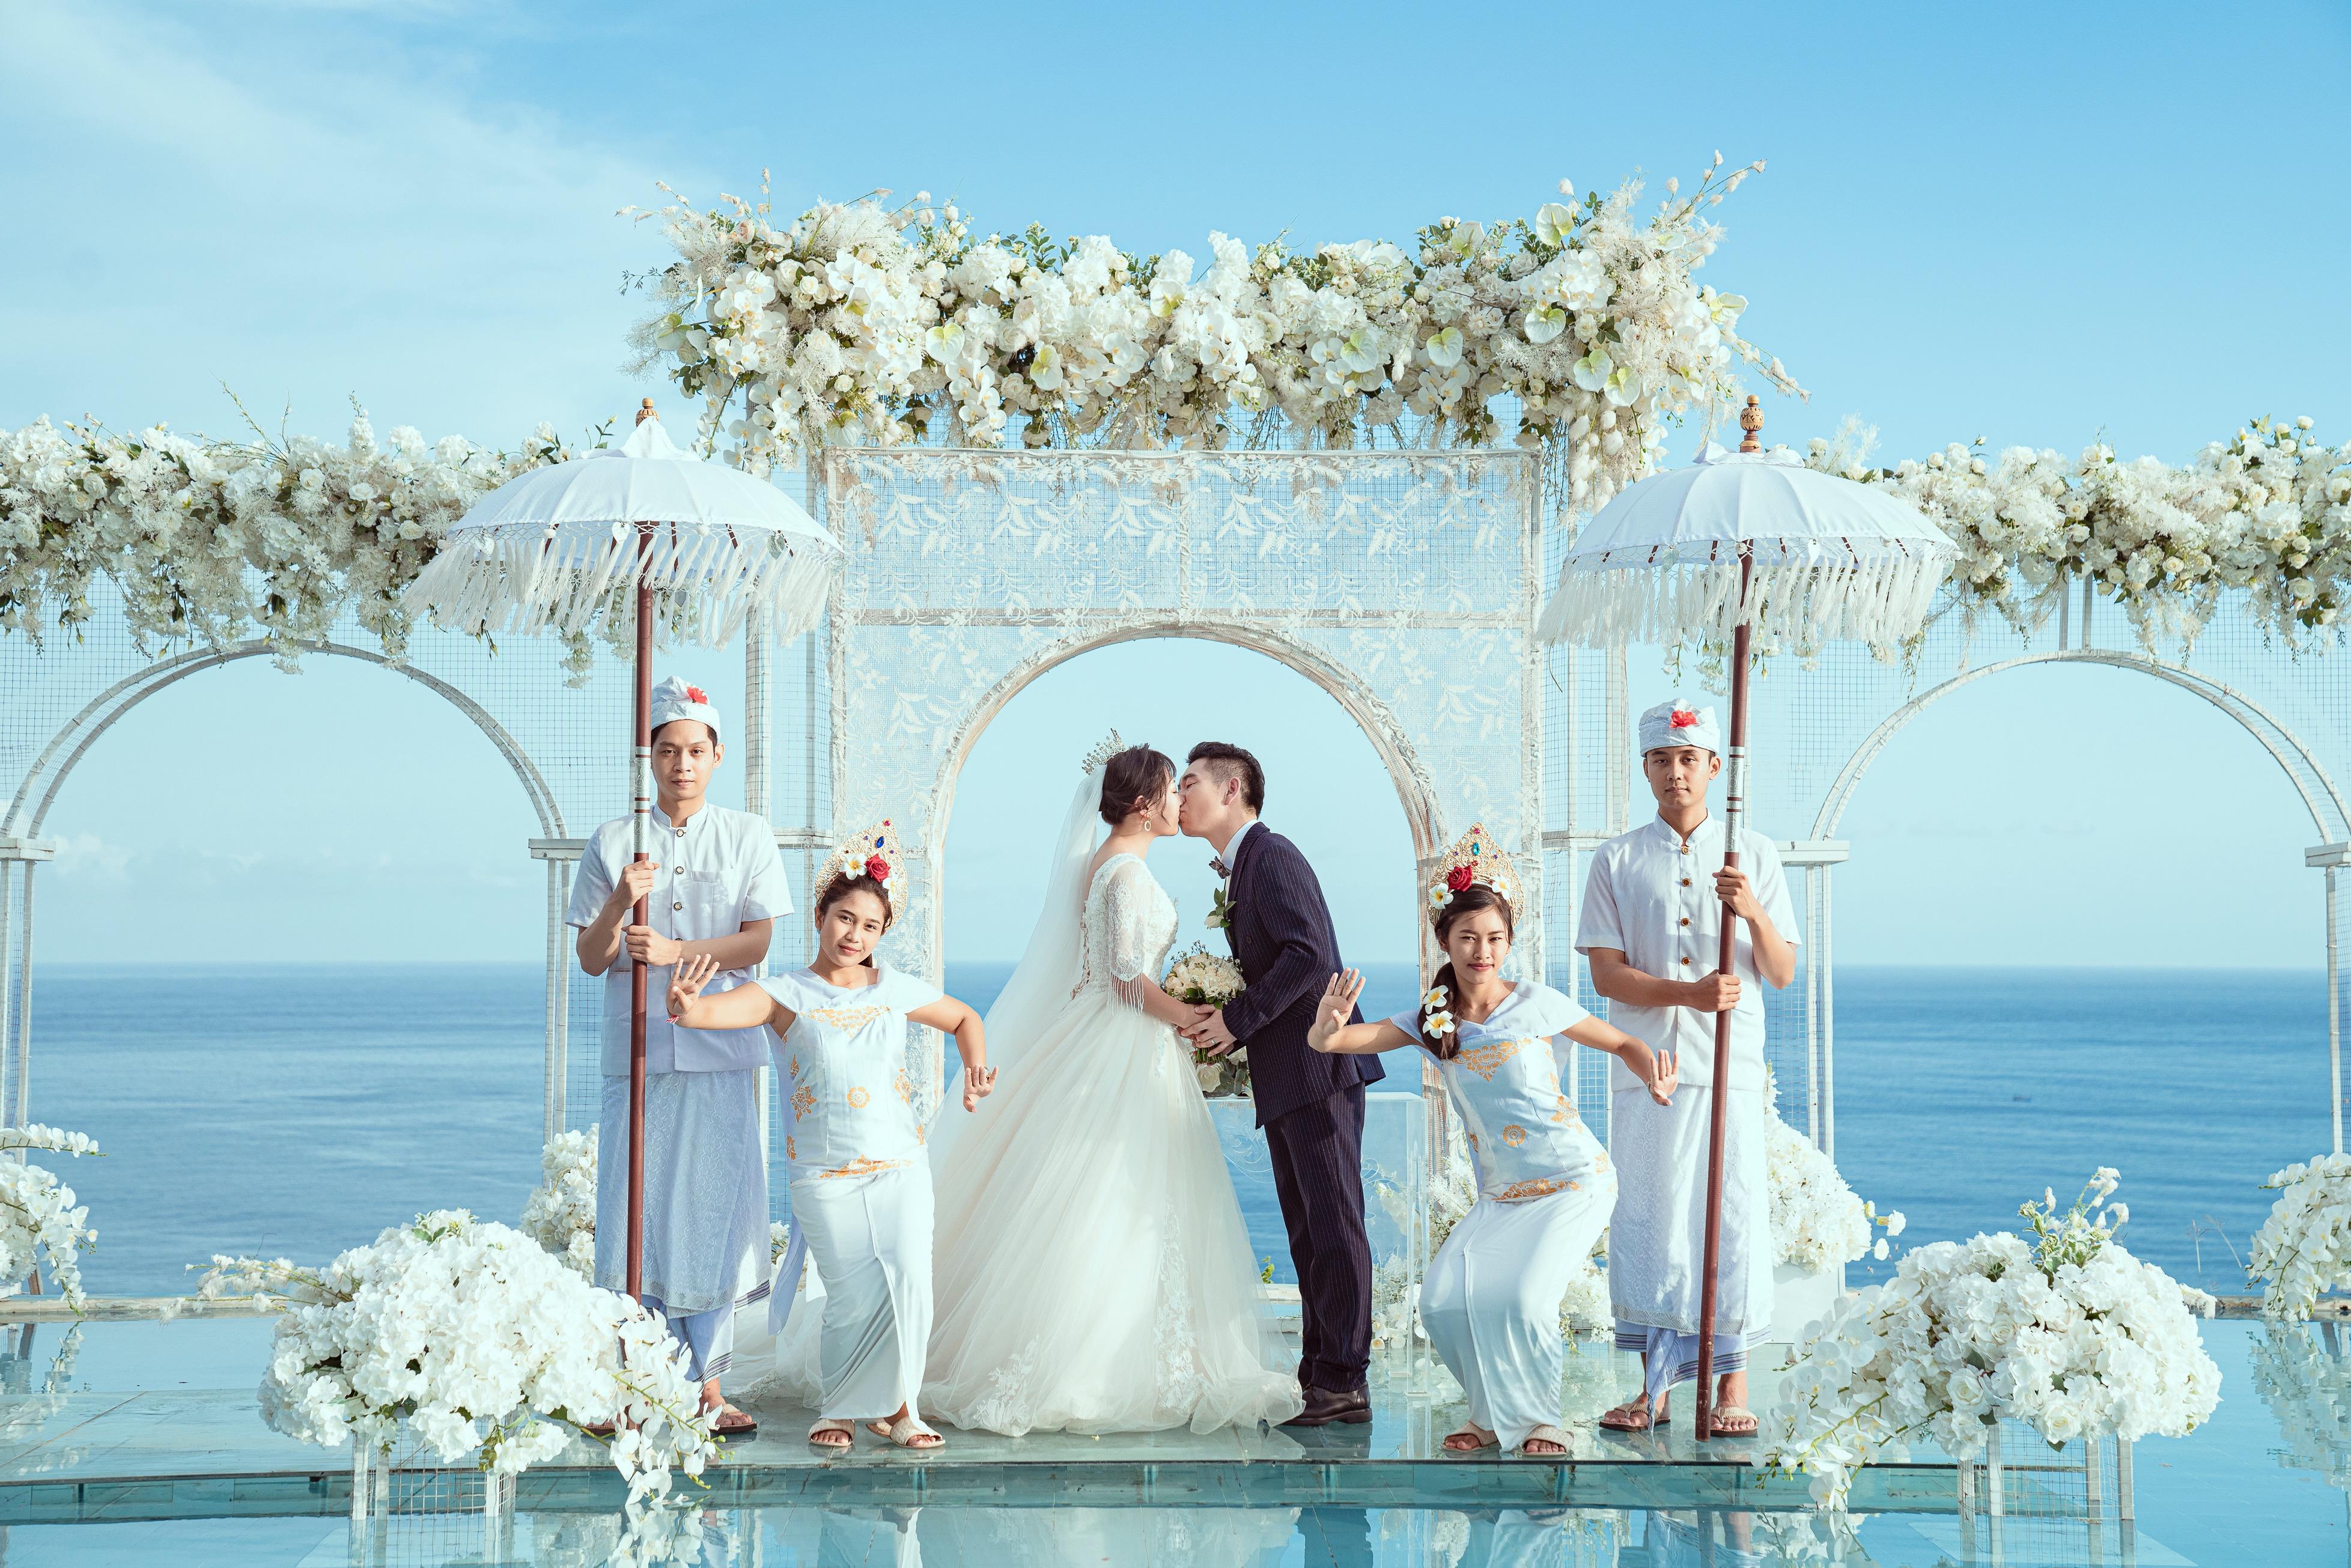 戴先生的巴厘岛天空之镜婚礼照片婚纱照__巴厘岛海外婚礼_婚纱摄影_旅行结婚_婚庆策划公司_蜜月时光海外婚礼